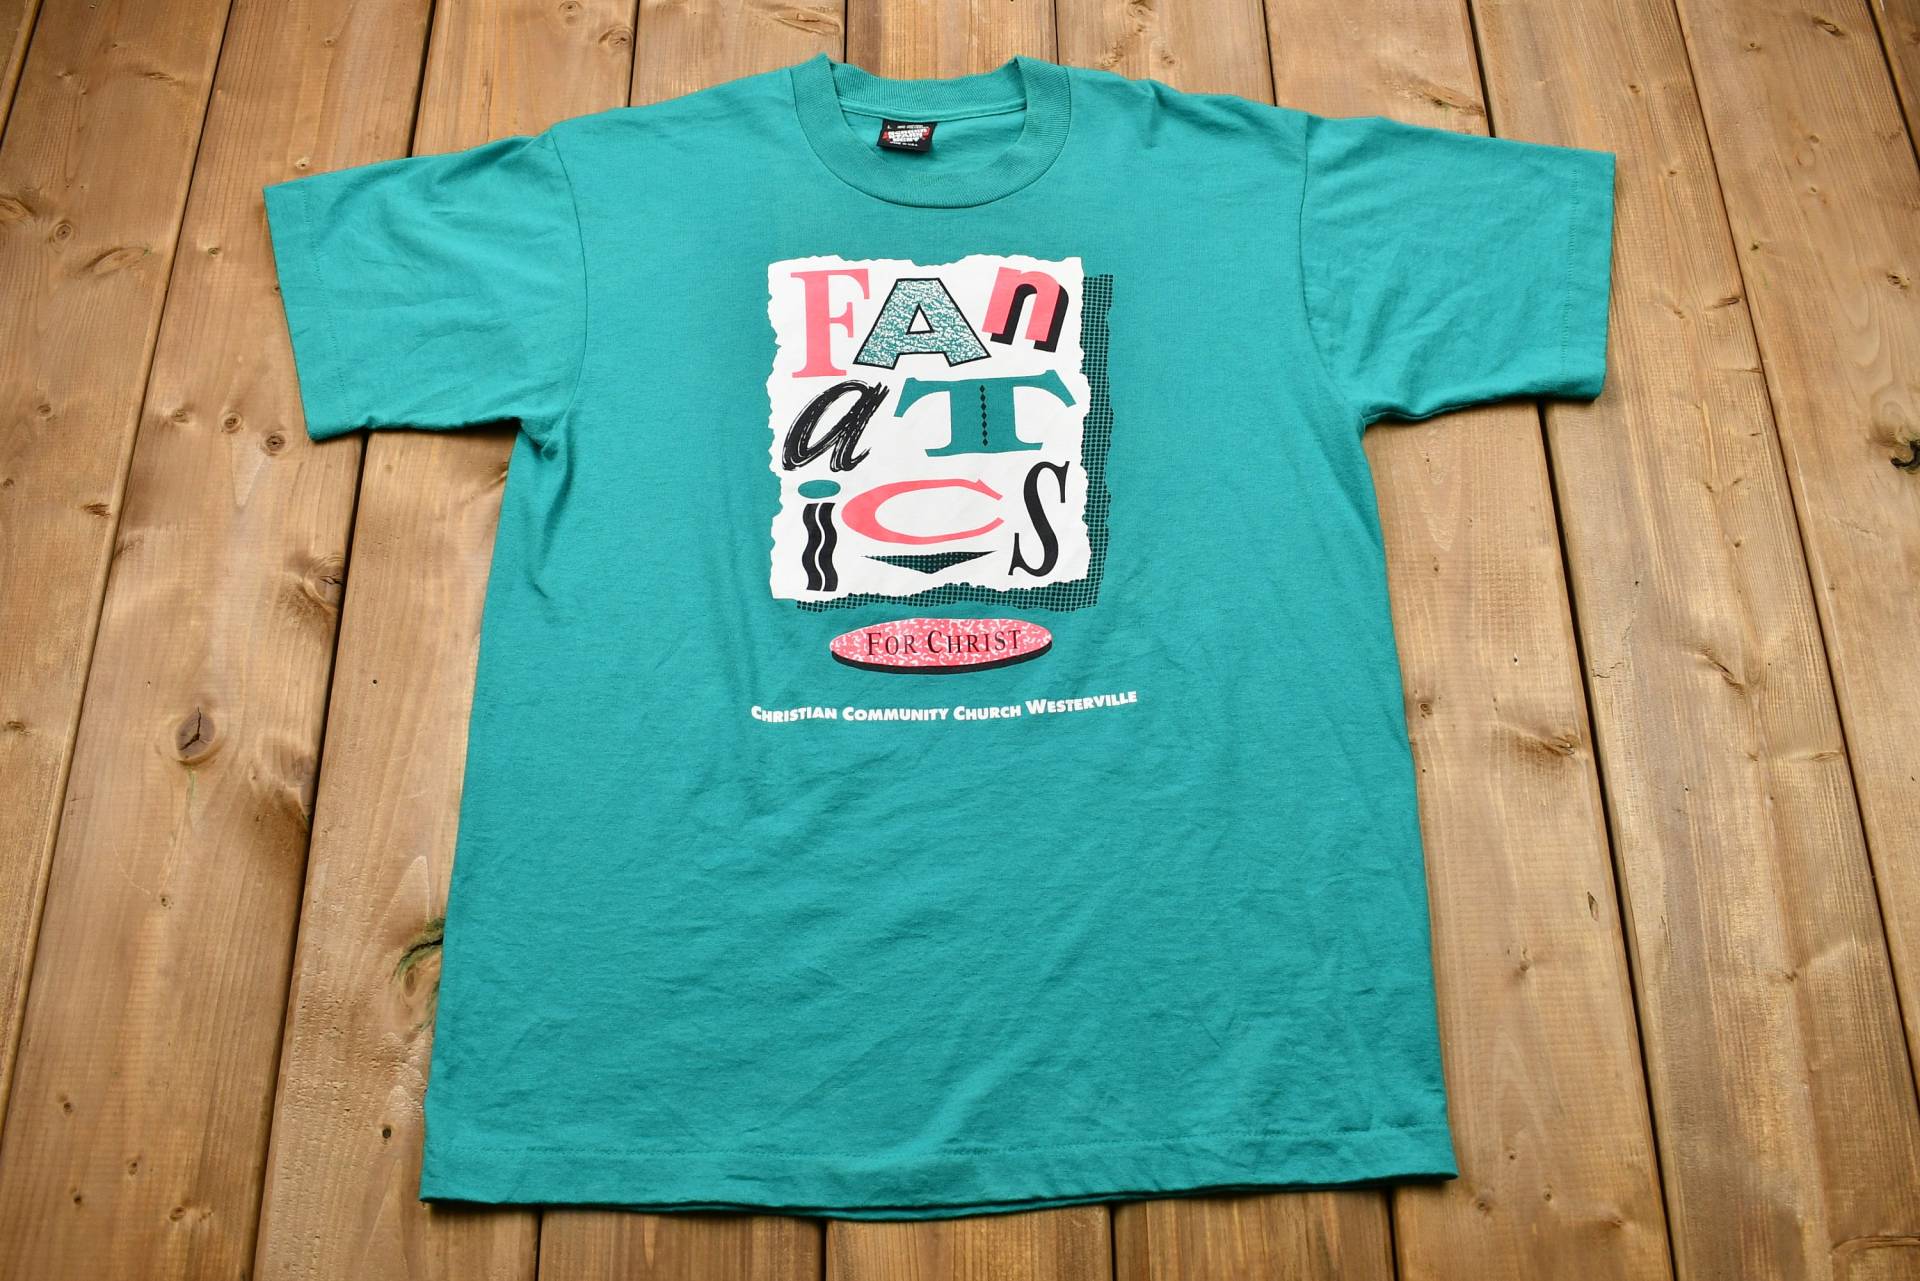 Vintage 1990Er Fanatics For Christ Grafik T-Shirt/Christliche Gemeindekirche Made in Usa 90Er Streetwear Single Stitch Souvenir von Lostboysvintage